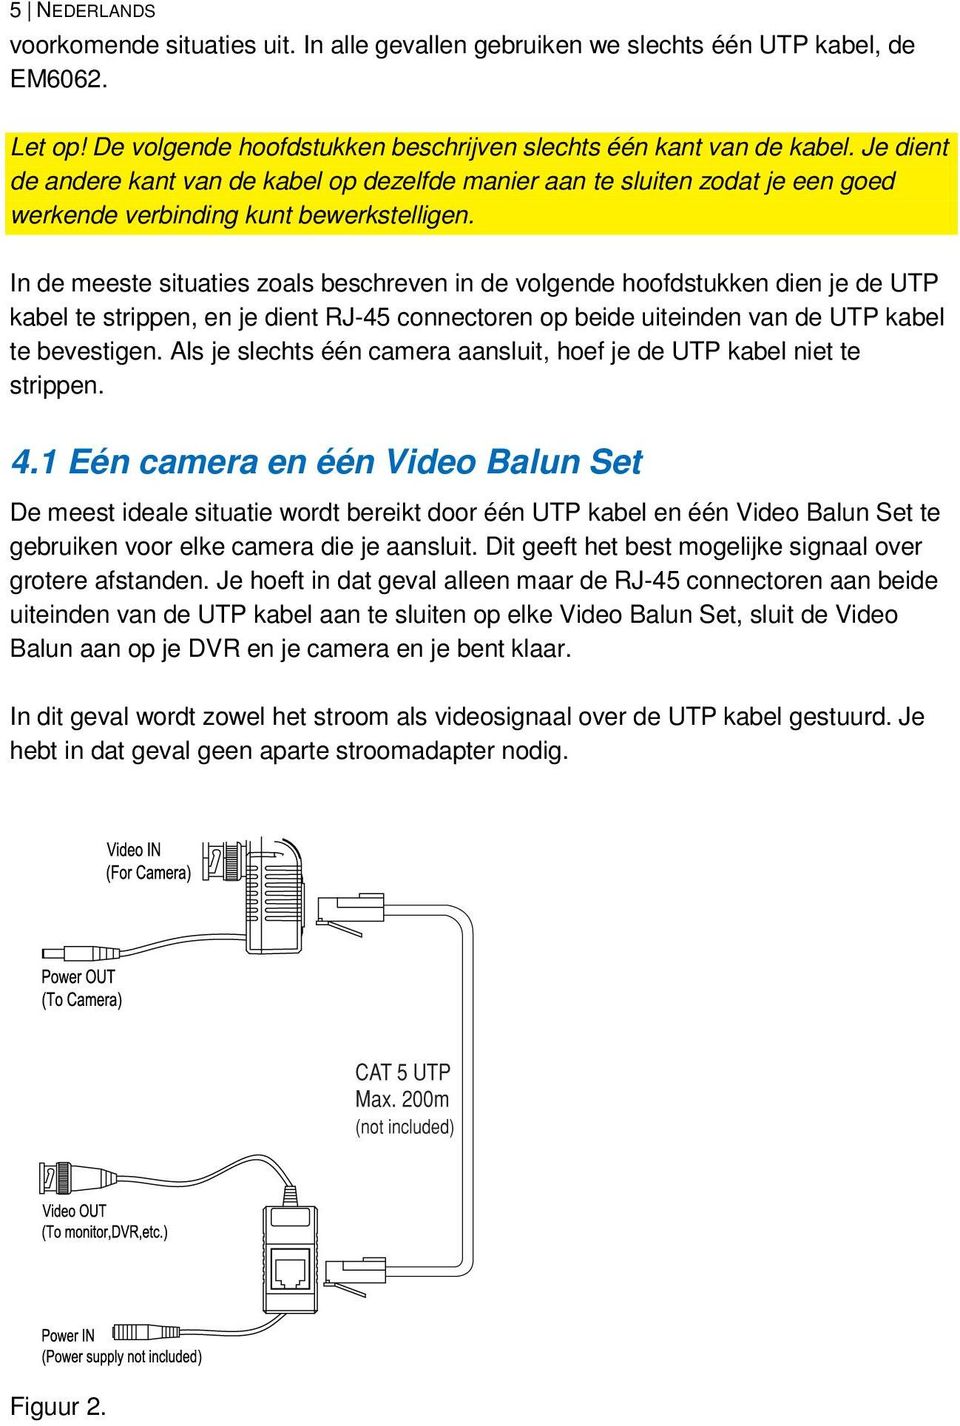 In de meeste situaties zoals beschreven in de volgende hoofdstukken dien je de UTP kabel te strippen, en je dient RJ-45 connectoren op beide uiteinden van de UTP kabel te bevestigen.